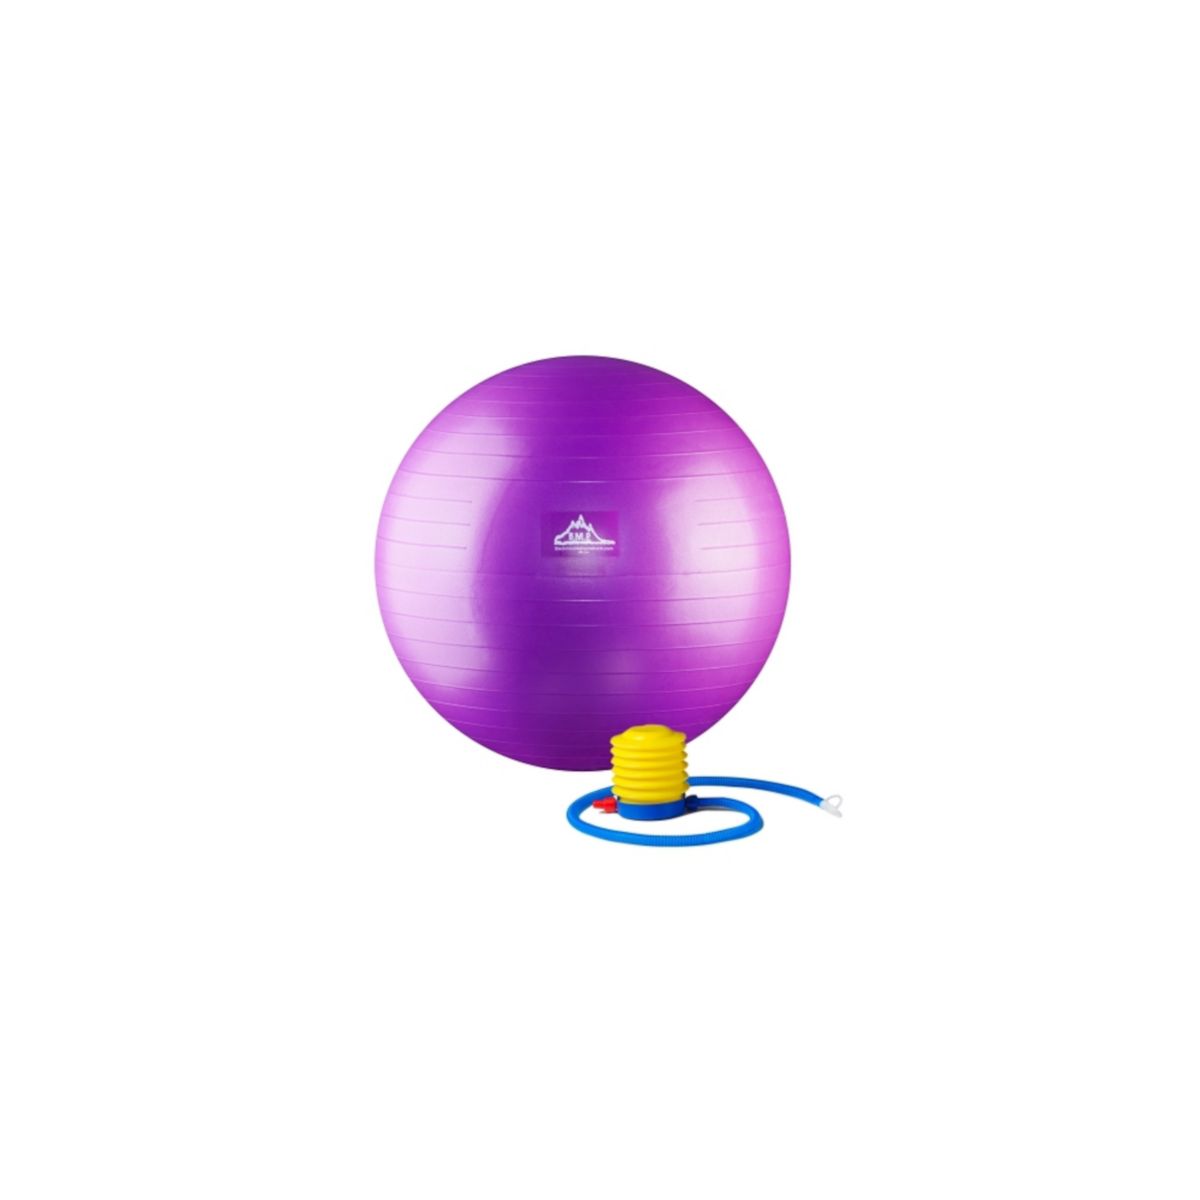 Мяч для устойчивости профессионального уровня 2000 фунтов с помпой, фиолетовый - 55 см HWR